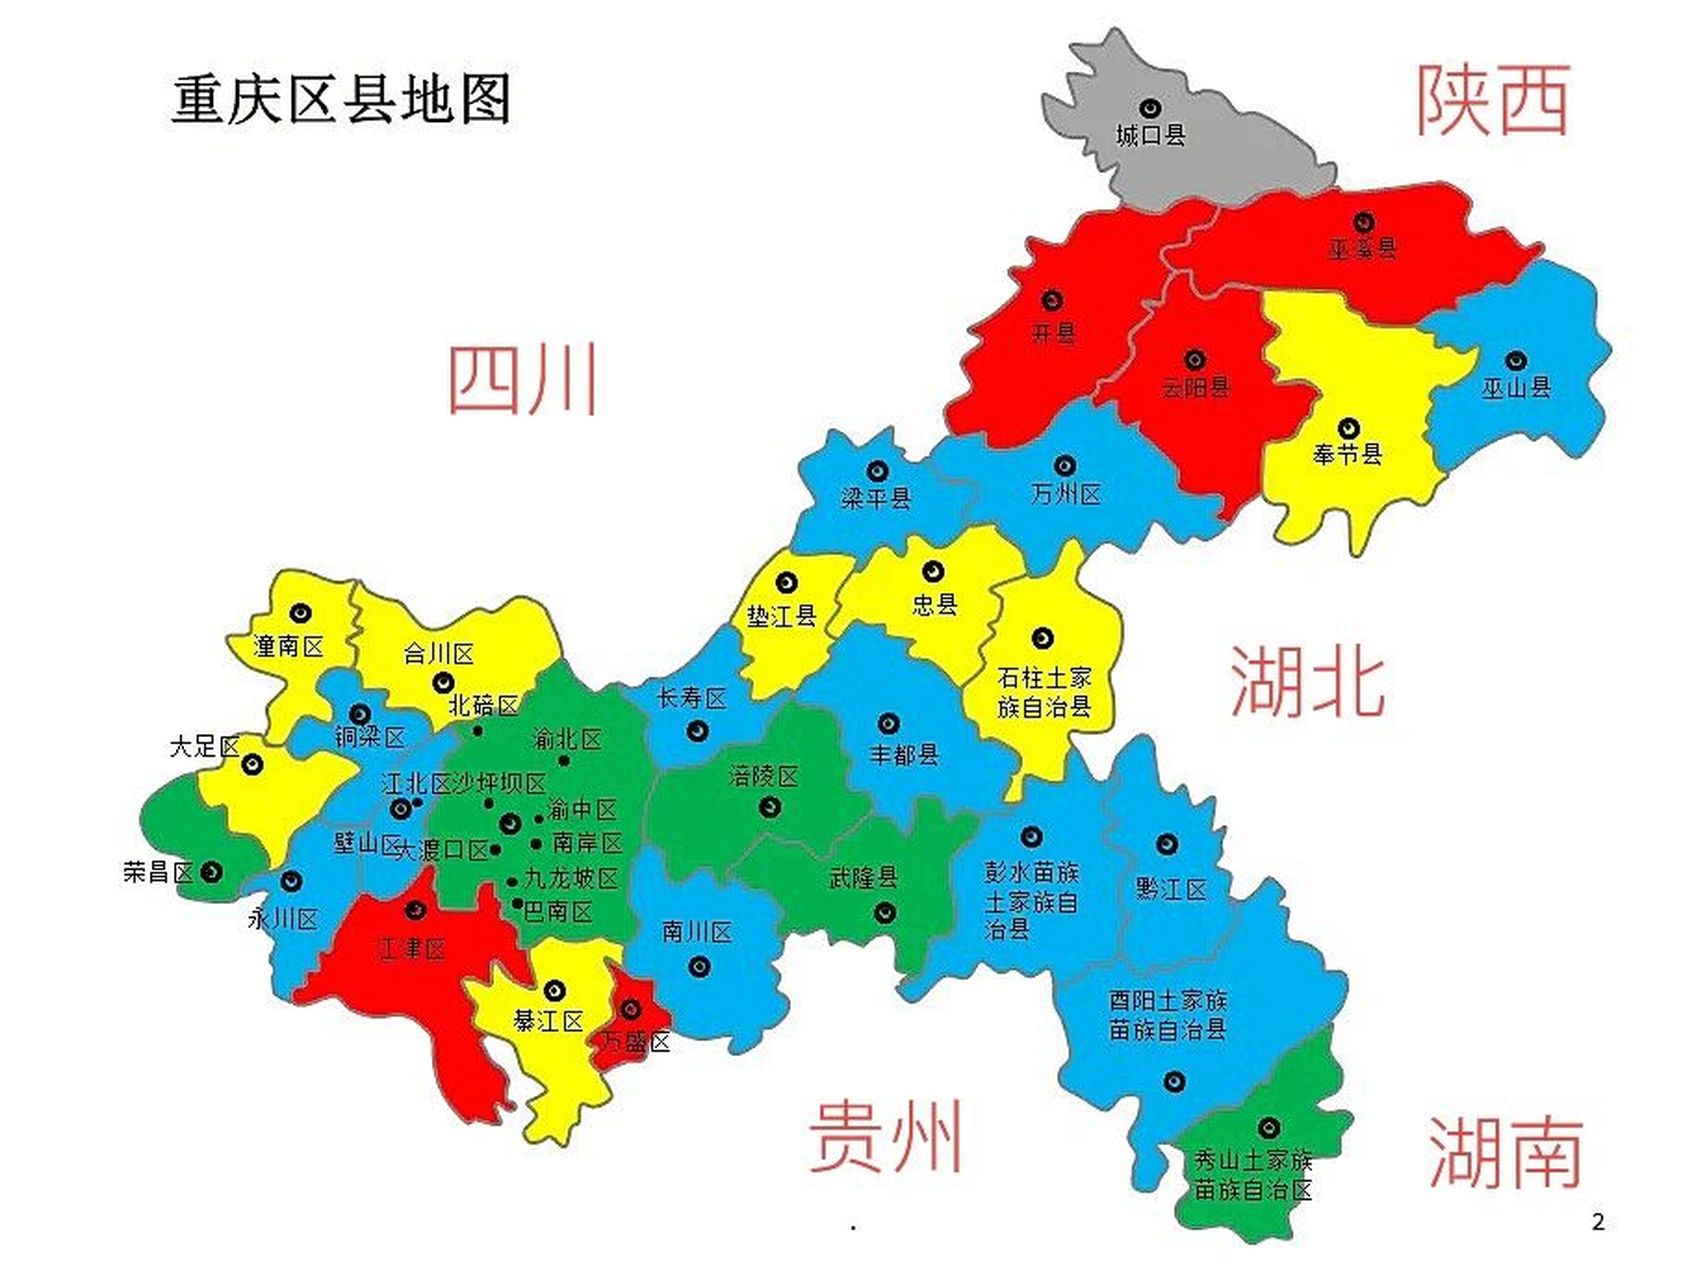 重庆详细地图 各地风景地明细 — 巴南区: 丰盛古镇,重庆东温泉风景区